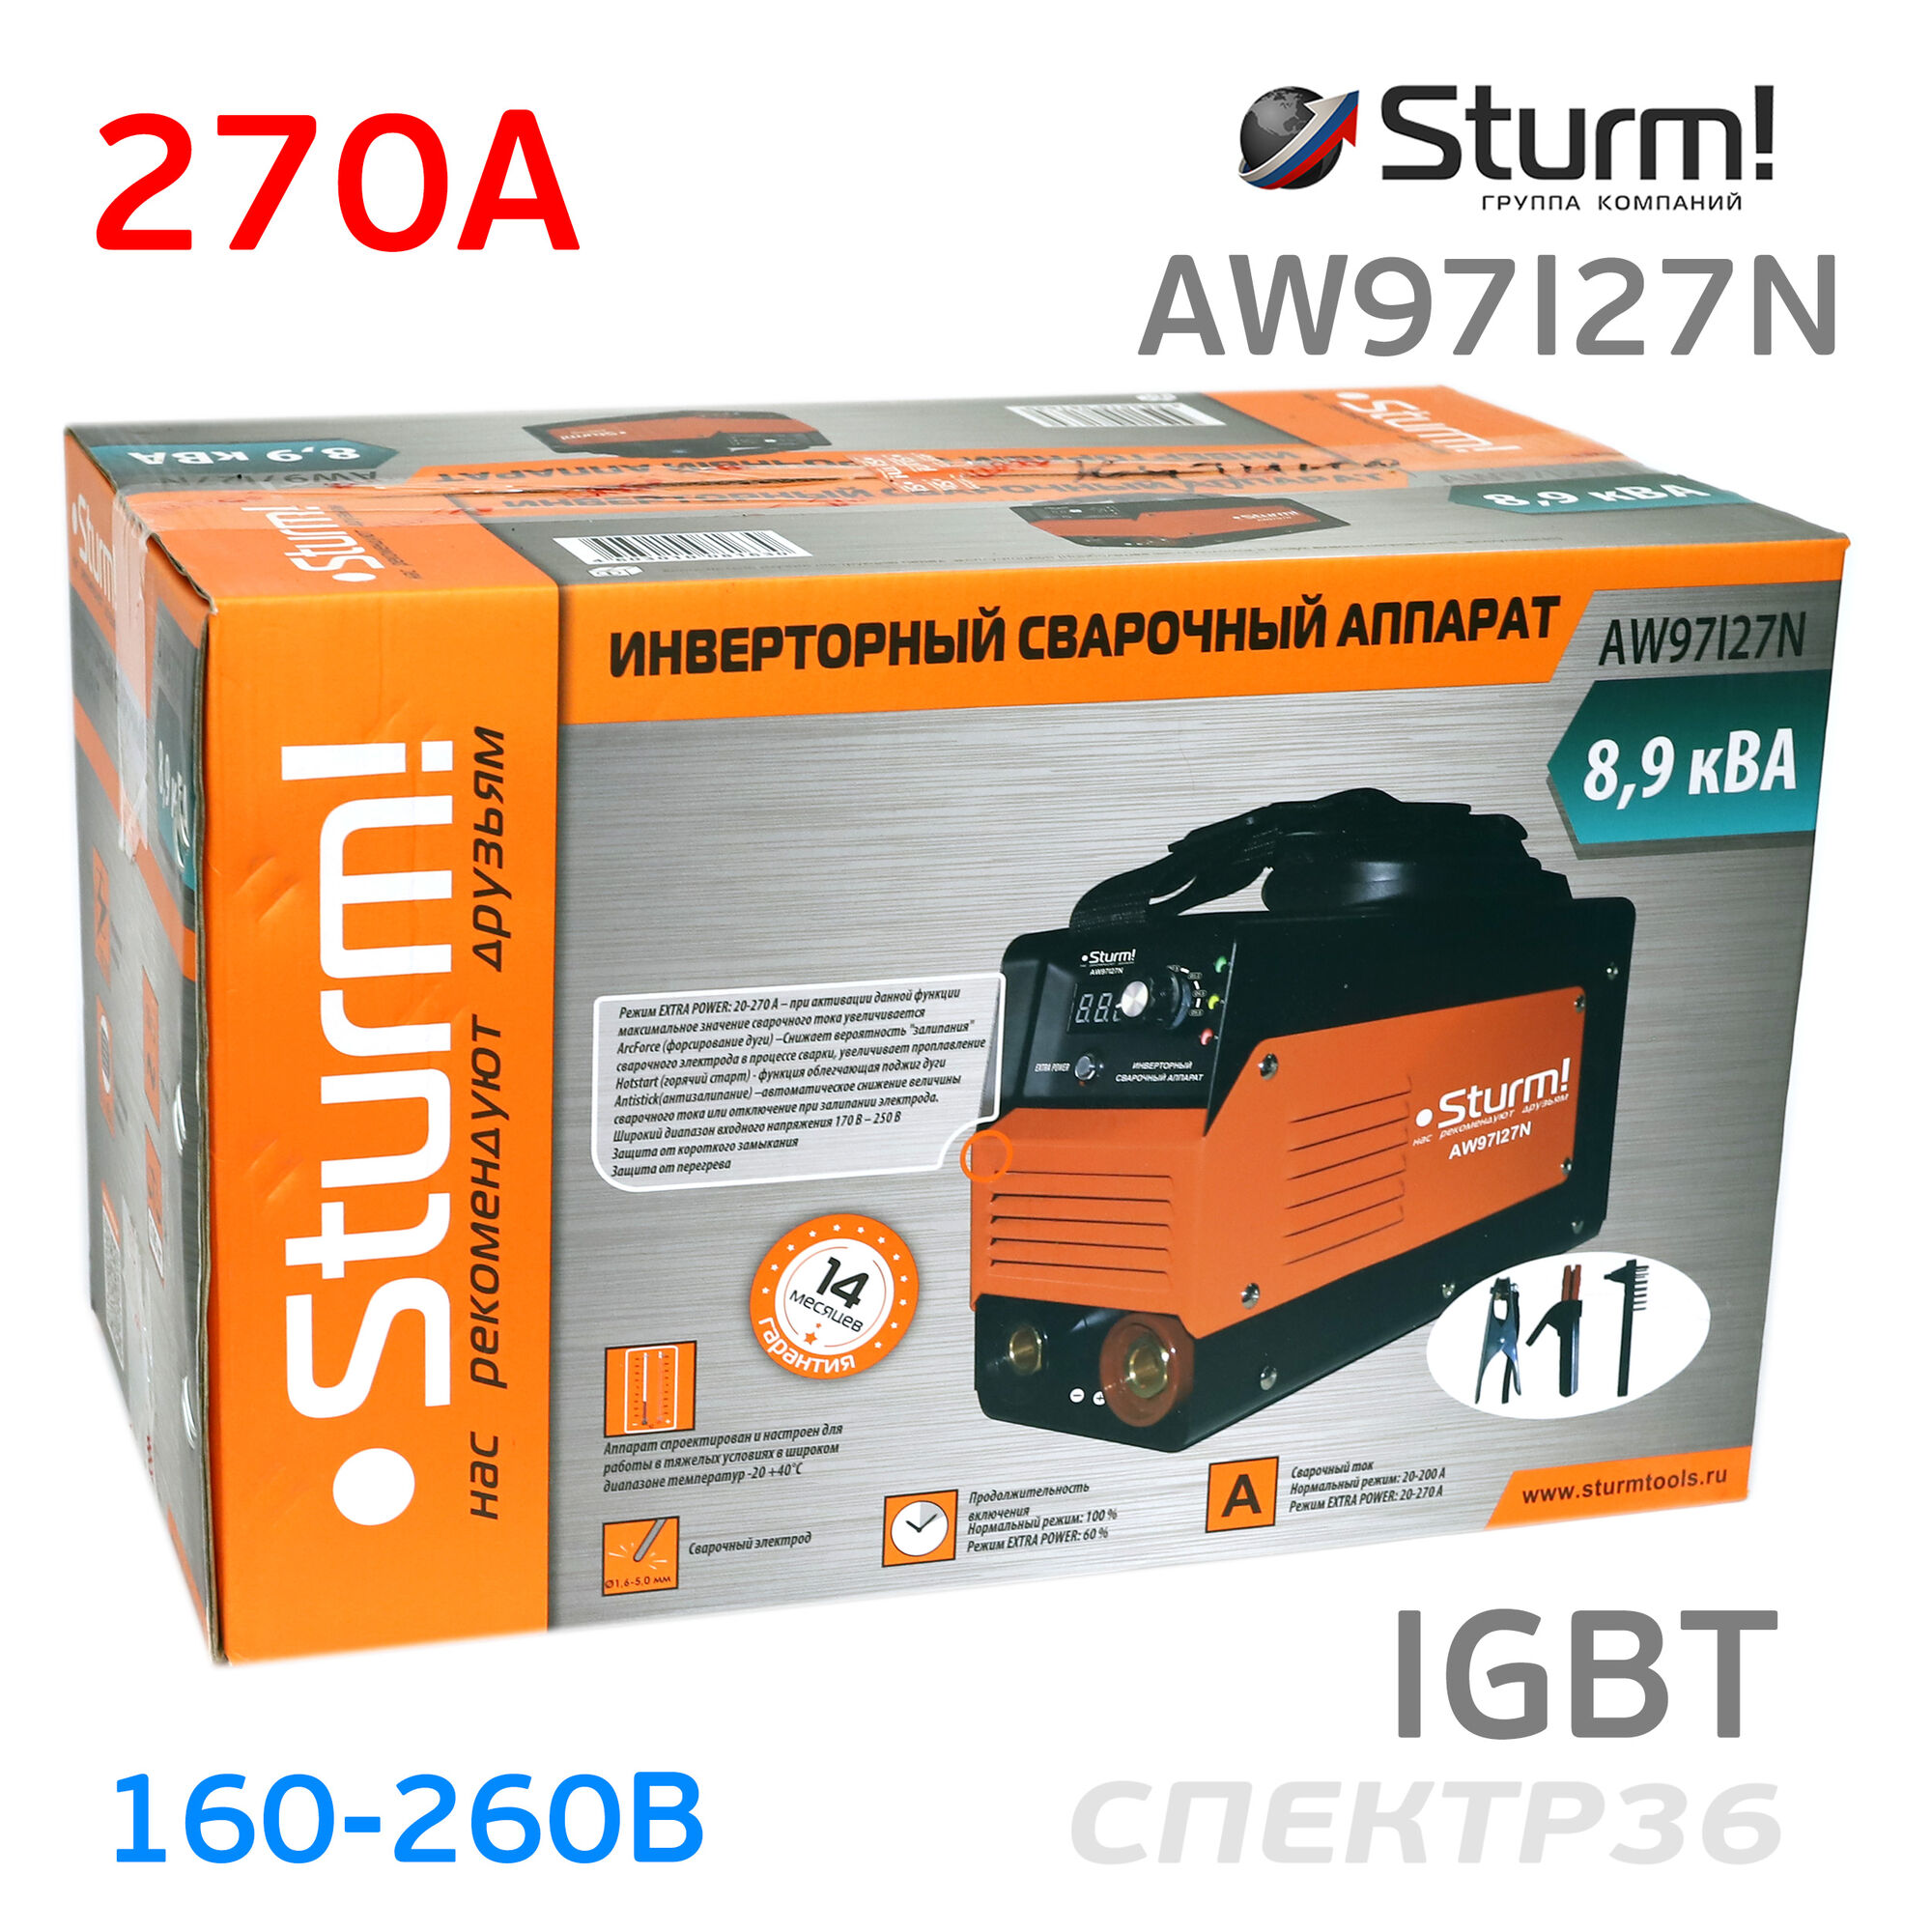 Инвертор Sturm AW97I27N (160-260В, 270 А) IGBT сварочный #6